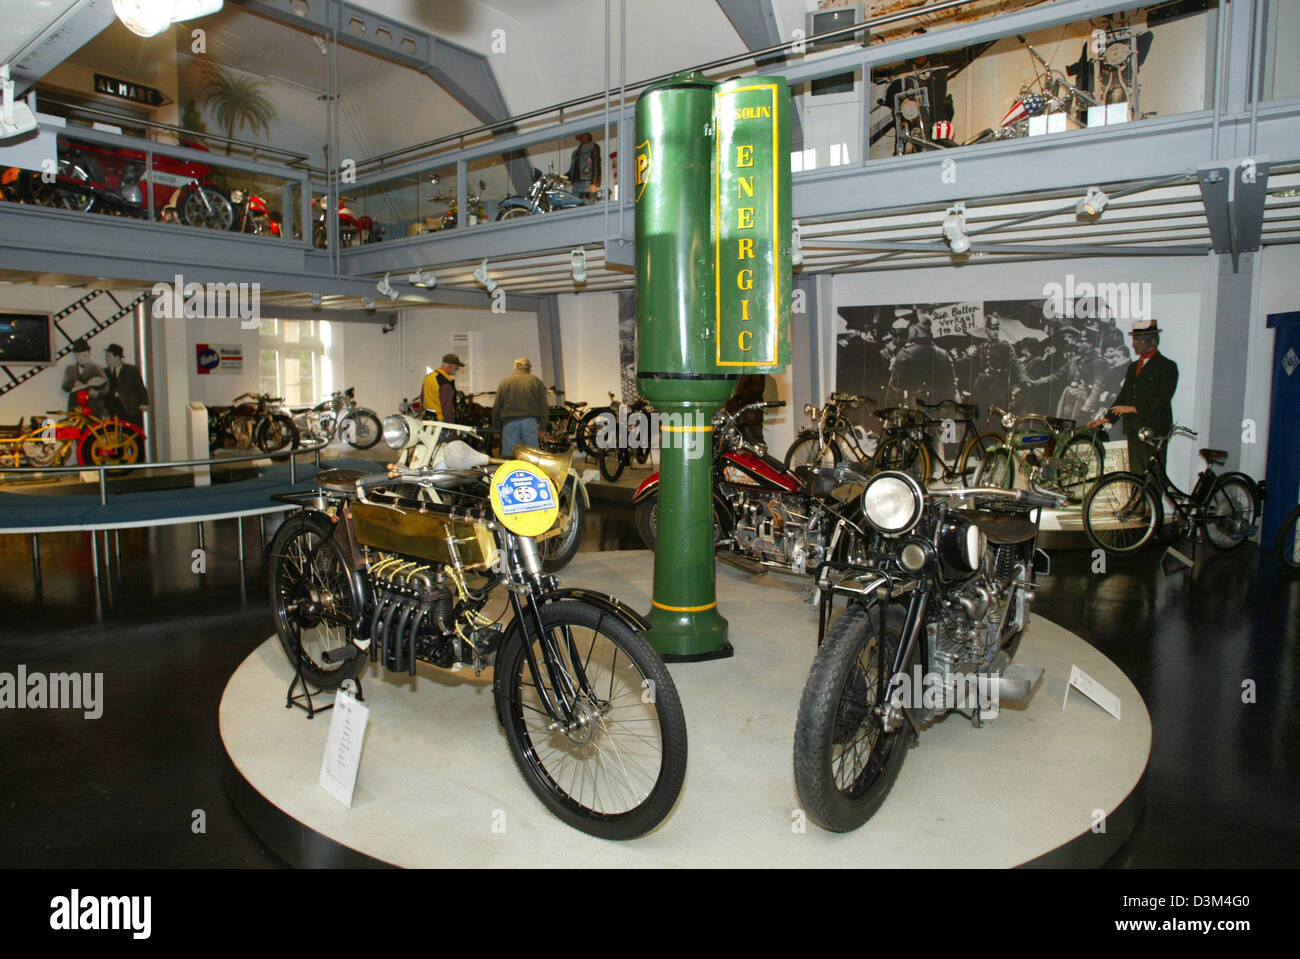 (Dpa) - Visitatori (L, indietro) passeggiare lungo le gallerie dotate di biciclette e motocicli a 'Zweirad Museum', museo per veicoli a due ruote, in Neckarsulm, Germania, 07 novembre 2005. Secondo il management, il museo, che è stato inaugurato nel 1956, ospita la più grande collezione storica di veicoli a due ruote in Germania con circa 400 presenta. Foto: Harry Melchert Foto Stock